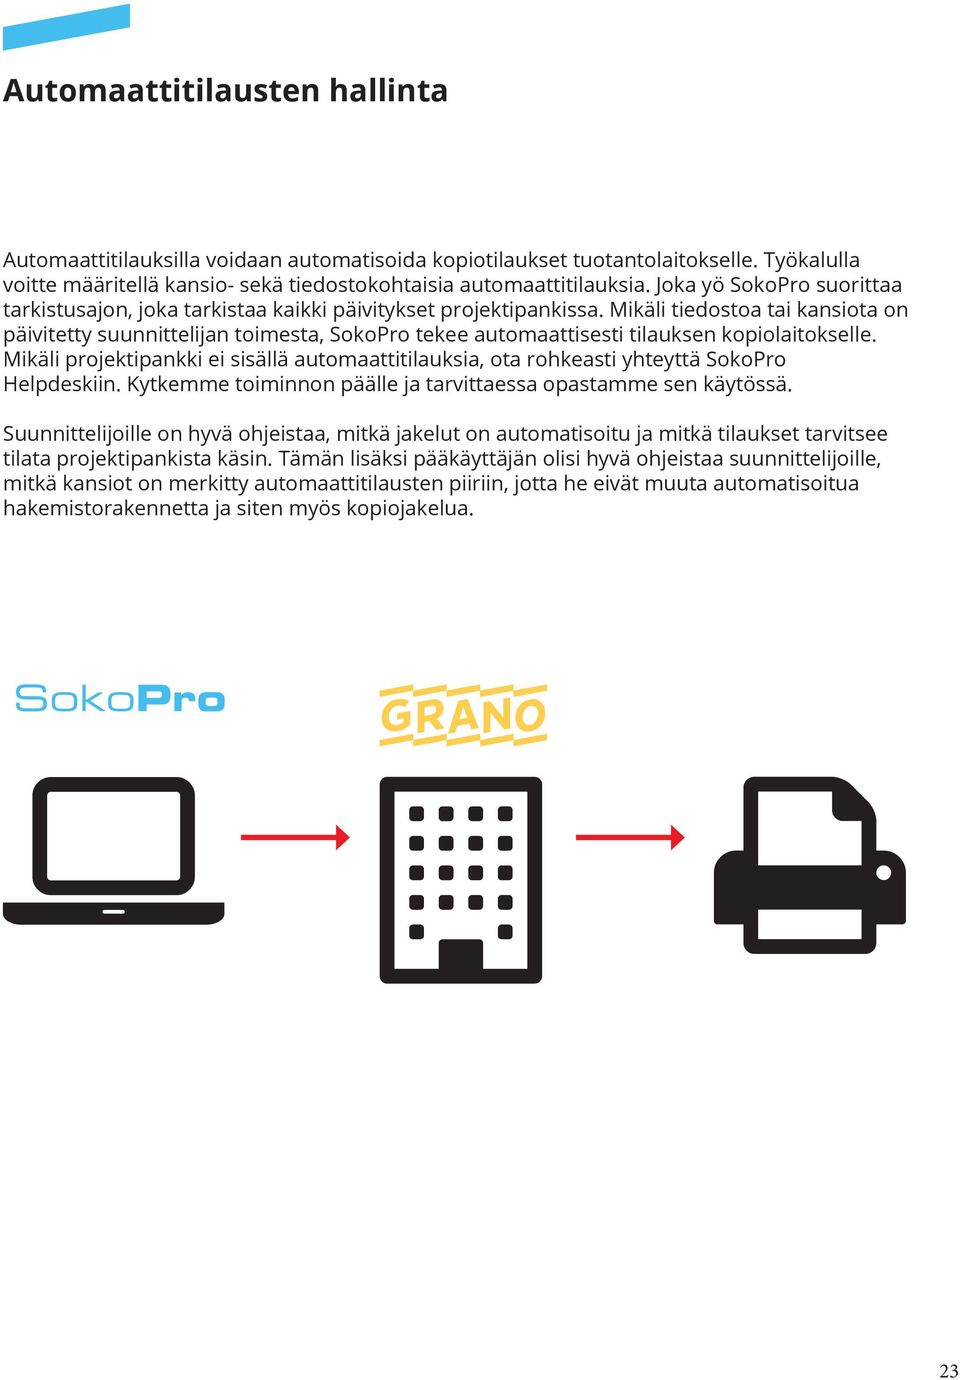 Mikäli tiedostoa tai kansiota on päivitetty suunnittelijan toimesta, SokoPro tekee automaattisesti tilauksen kopiolaitokselle.